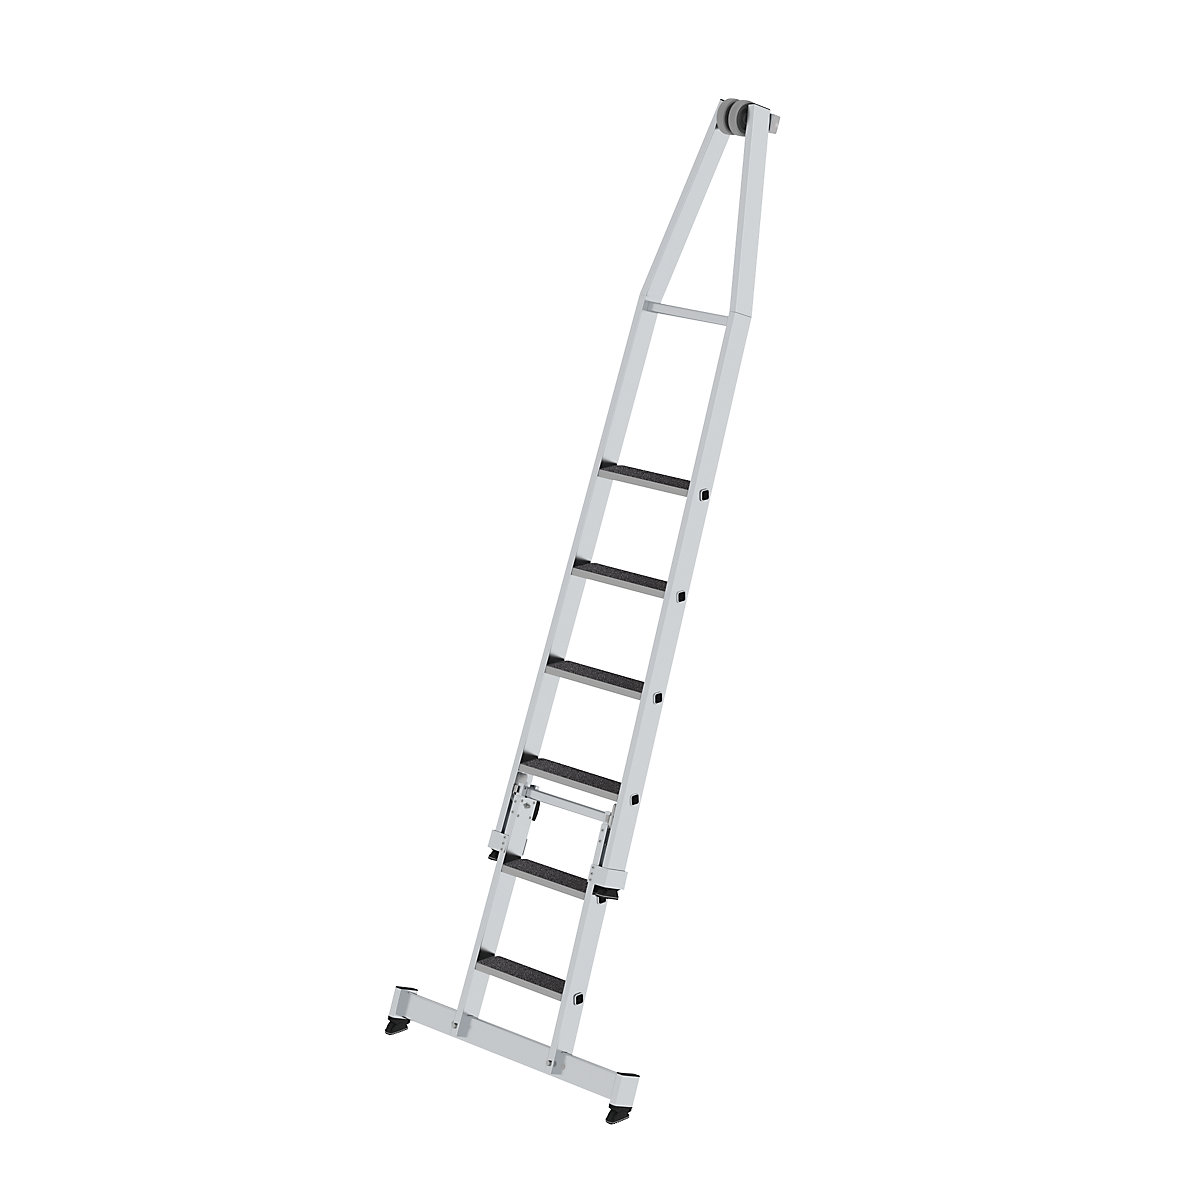 Rebrík so stupňami na čistenie okien – MUNK